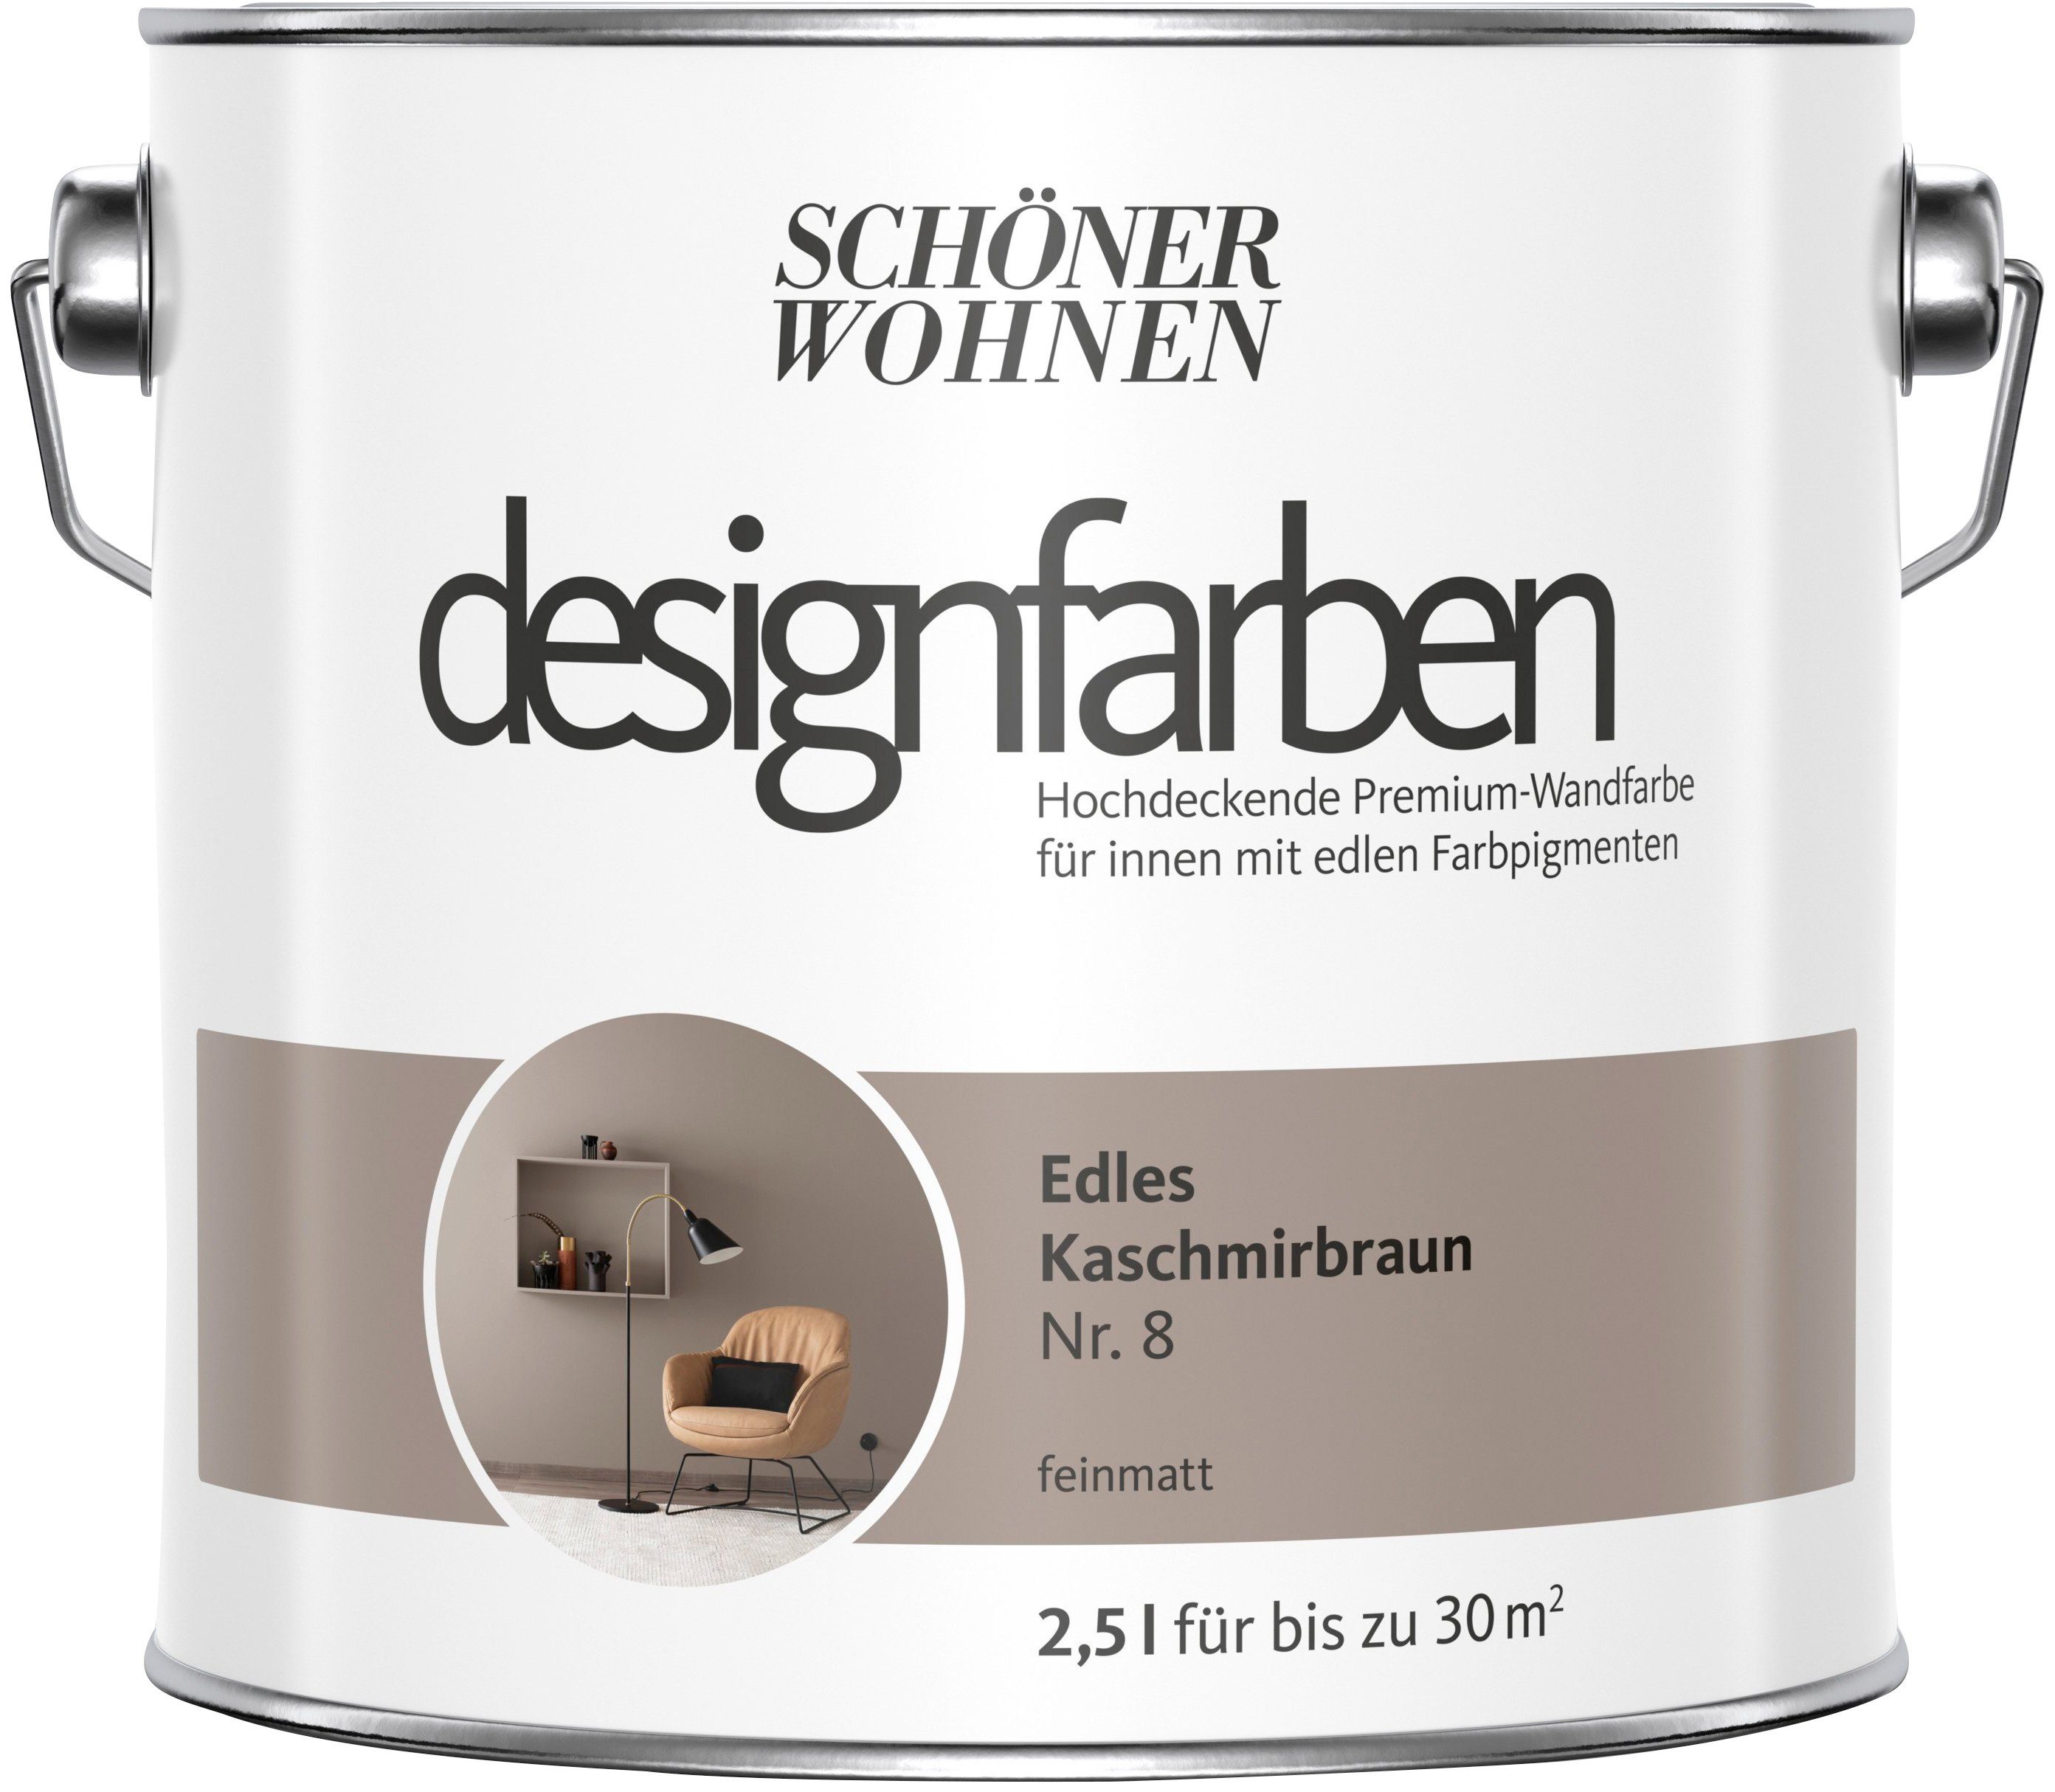 Deckenfarbe Kaschmirbraun Premium-Wandfarbe und Liter, WOHNEN Edles Wand- 8, SCHÖNER FARBE Designfarben, 2,5 Nr. hochdeckende